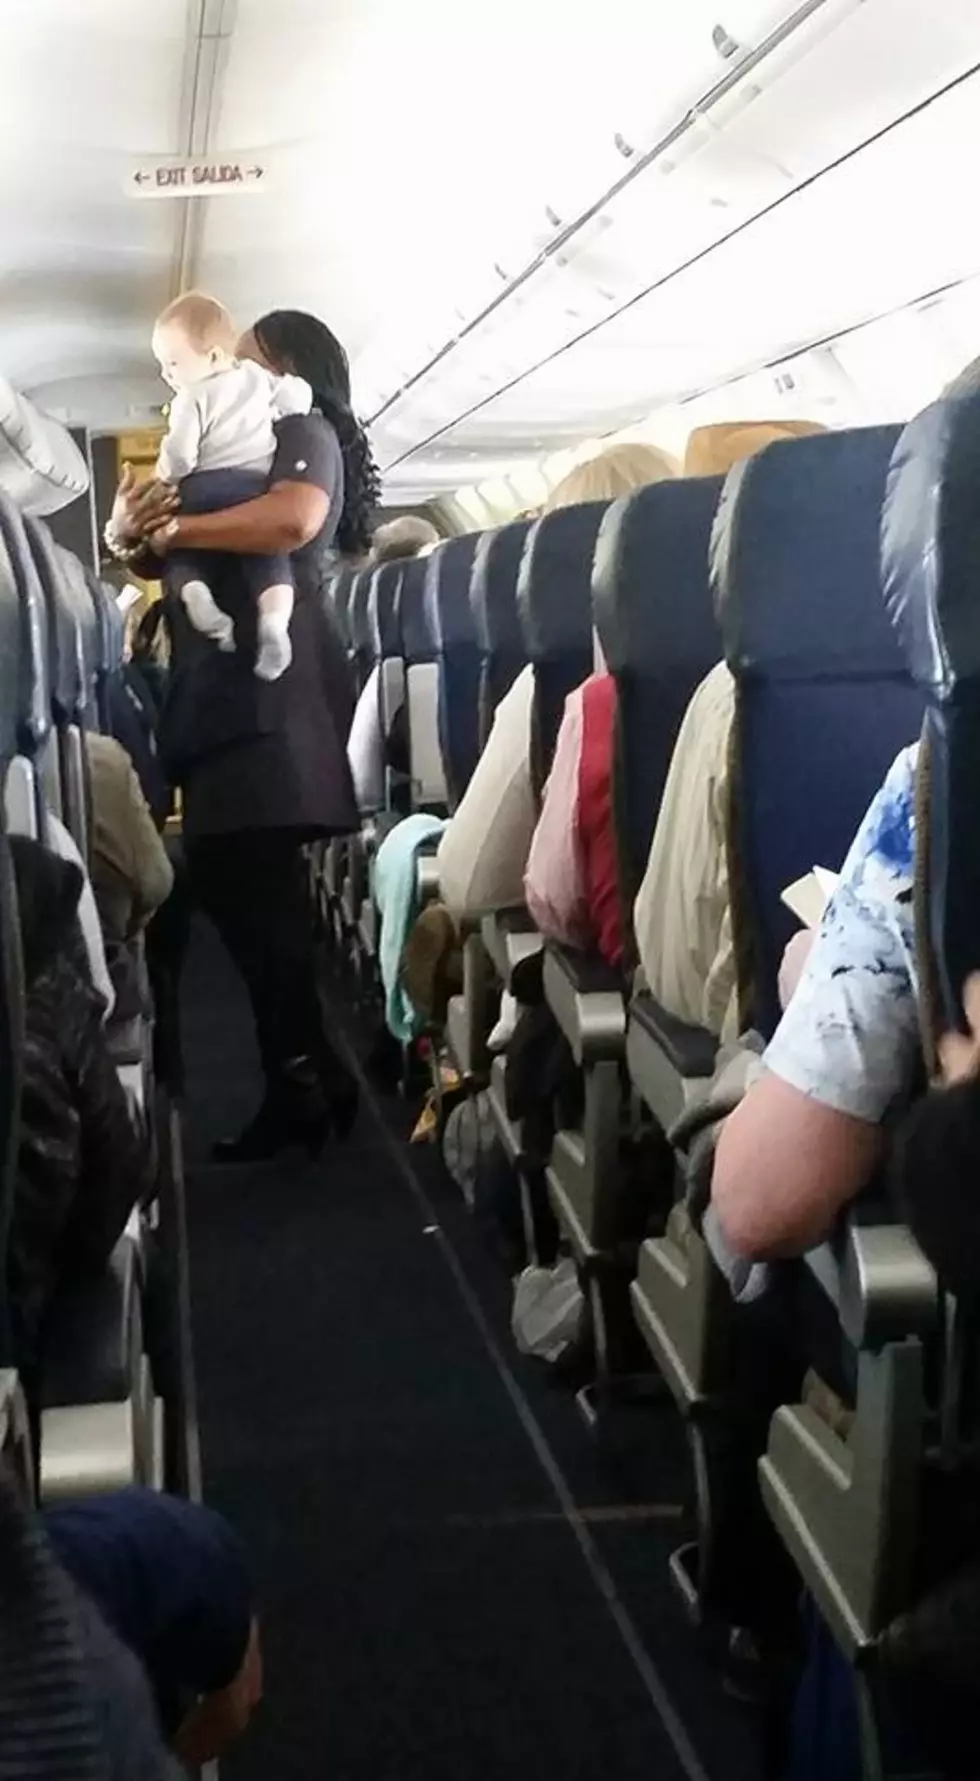 If You Are Fat, Don’t Sit Next To A Lawyer On A Plane!